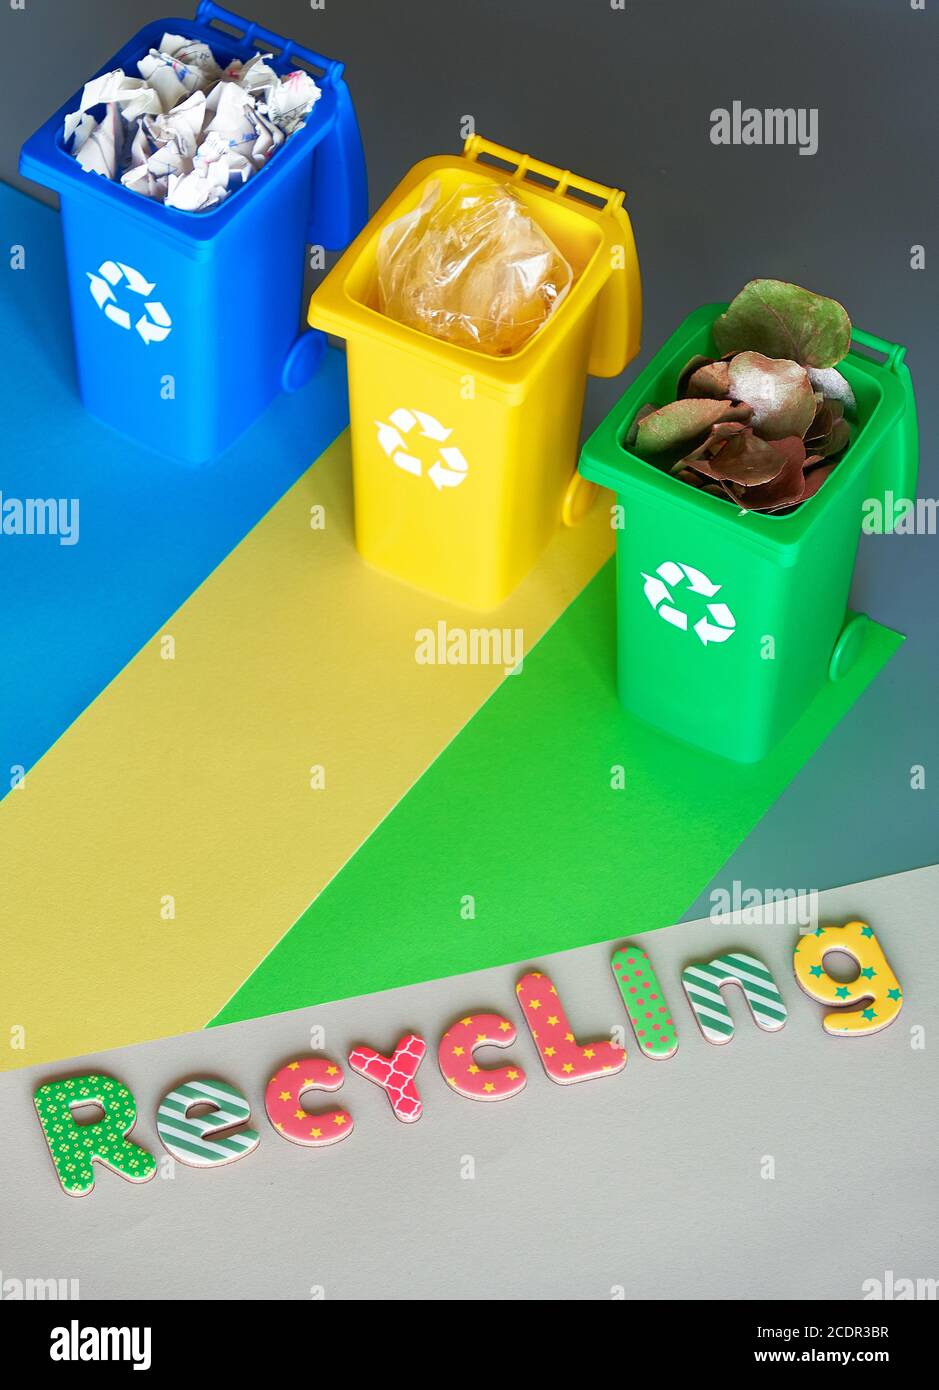 Estación de reciclaje 3 botes